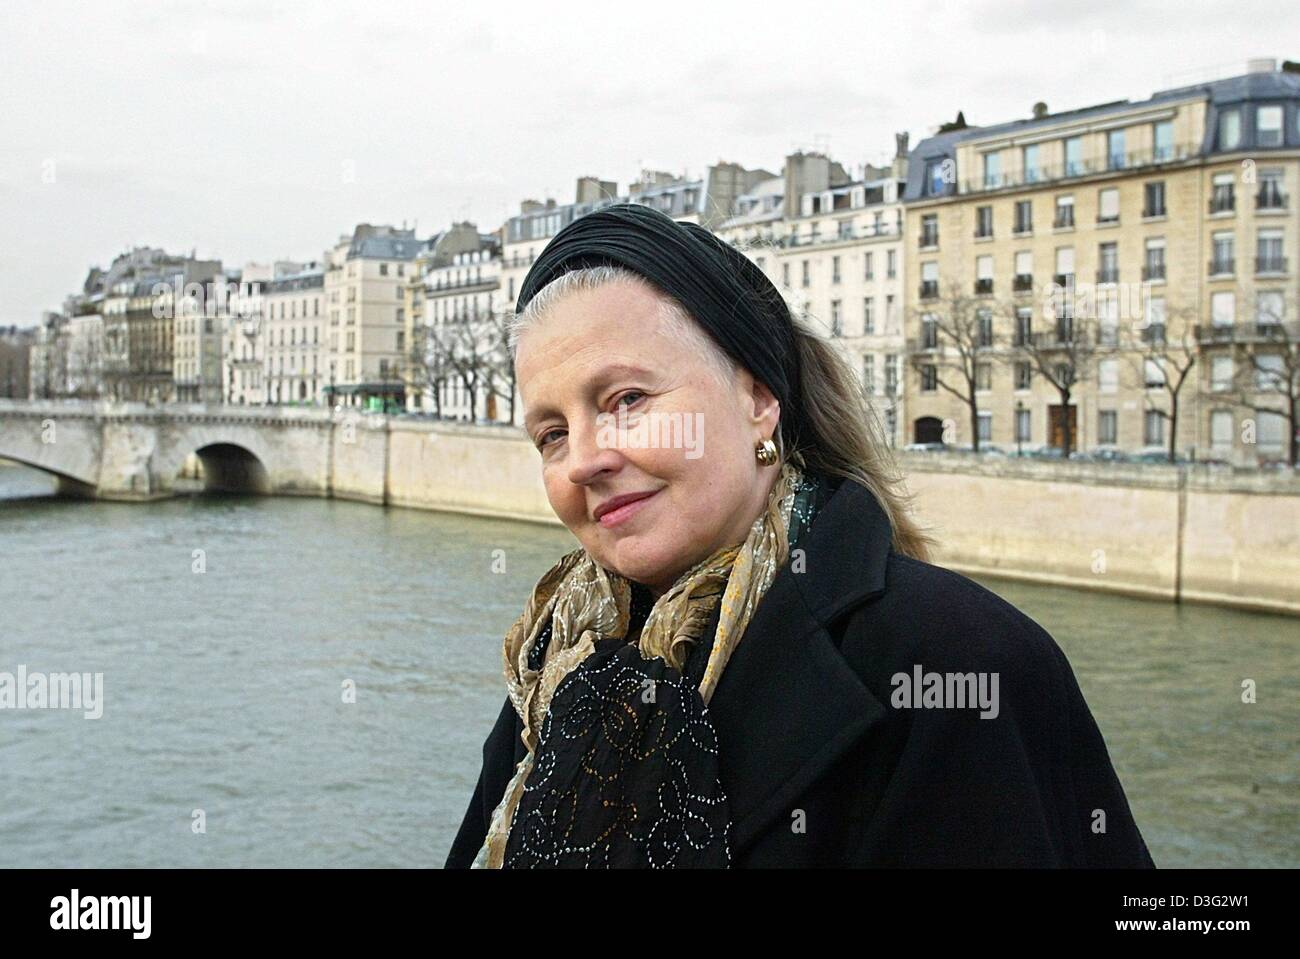 (Afp) - L'actrice allemande Hanna Schygulla ('LE MARIAGE DE MARIA BRAUN", "de l'Effie Briest') pose sur un pont de Paris, le 8 mars 2003. Né le 25 décembre 1943 à Kattowitz (maintenant Katowice, Pologne), Schygulla est venu à Paris pour la première fois comme une fille au pair après qu'elle avait obtenu son diplôme de l'école. Durant les années 1970, elle est devenue l'une des actrices principales en Allemagne, jouant dans plusieurs de Fassbinder' Banque D'Images